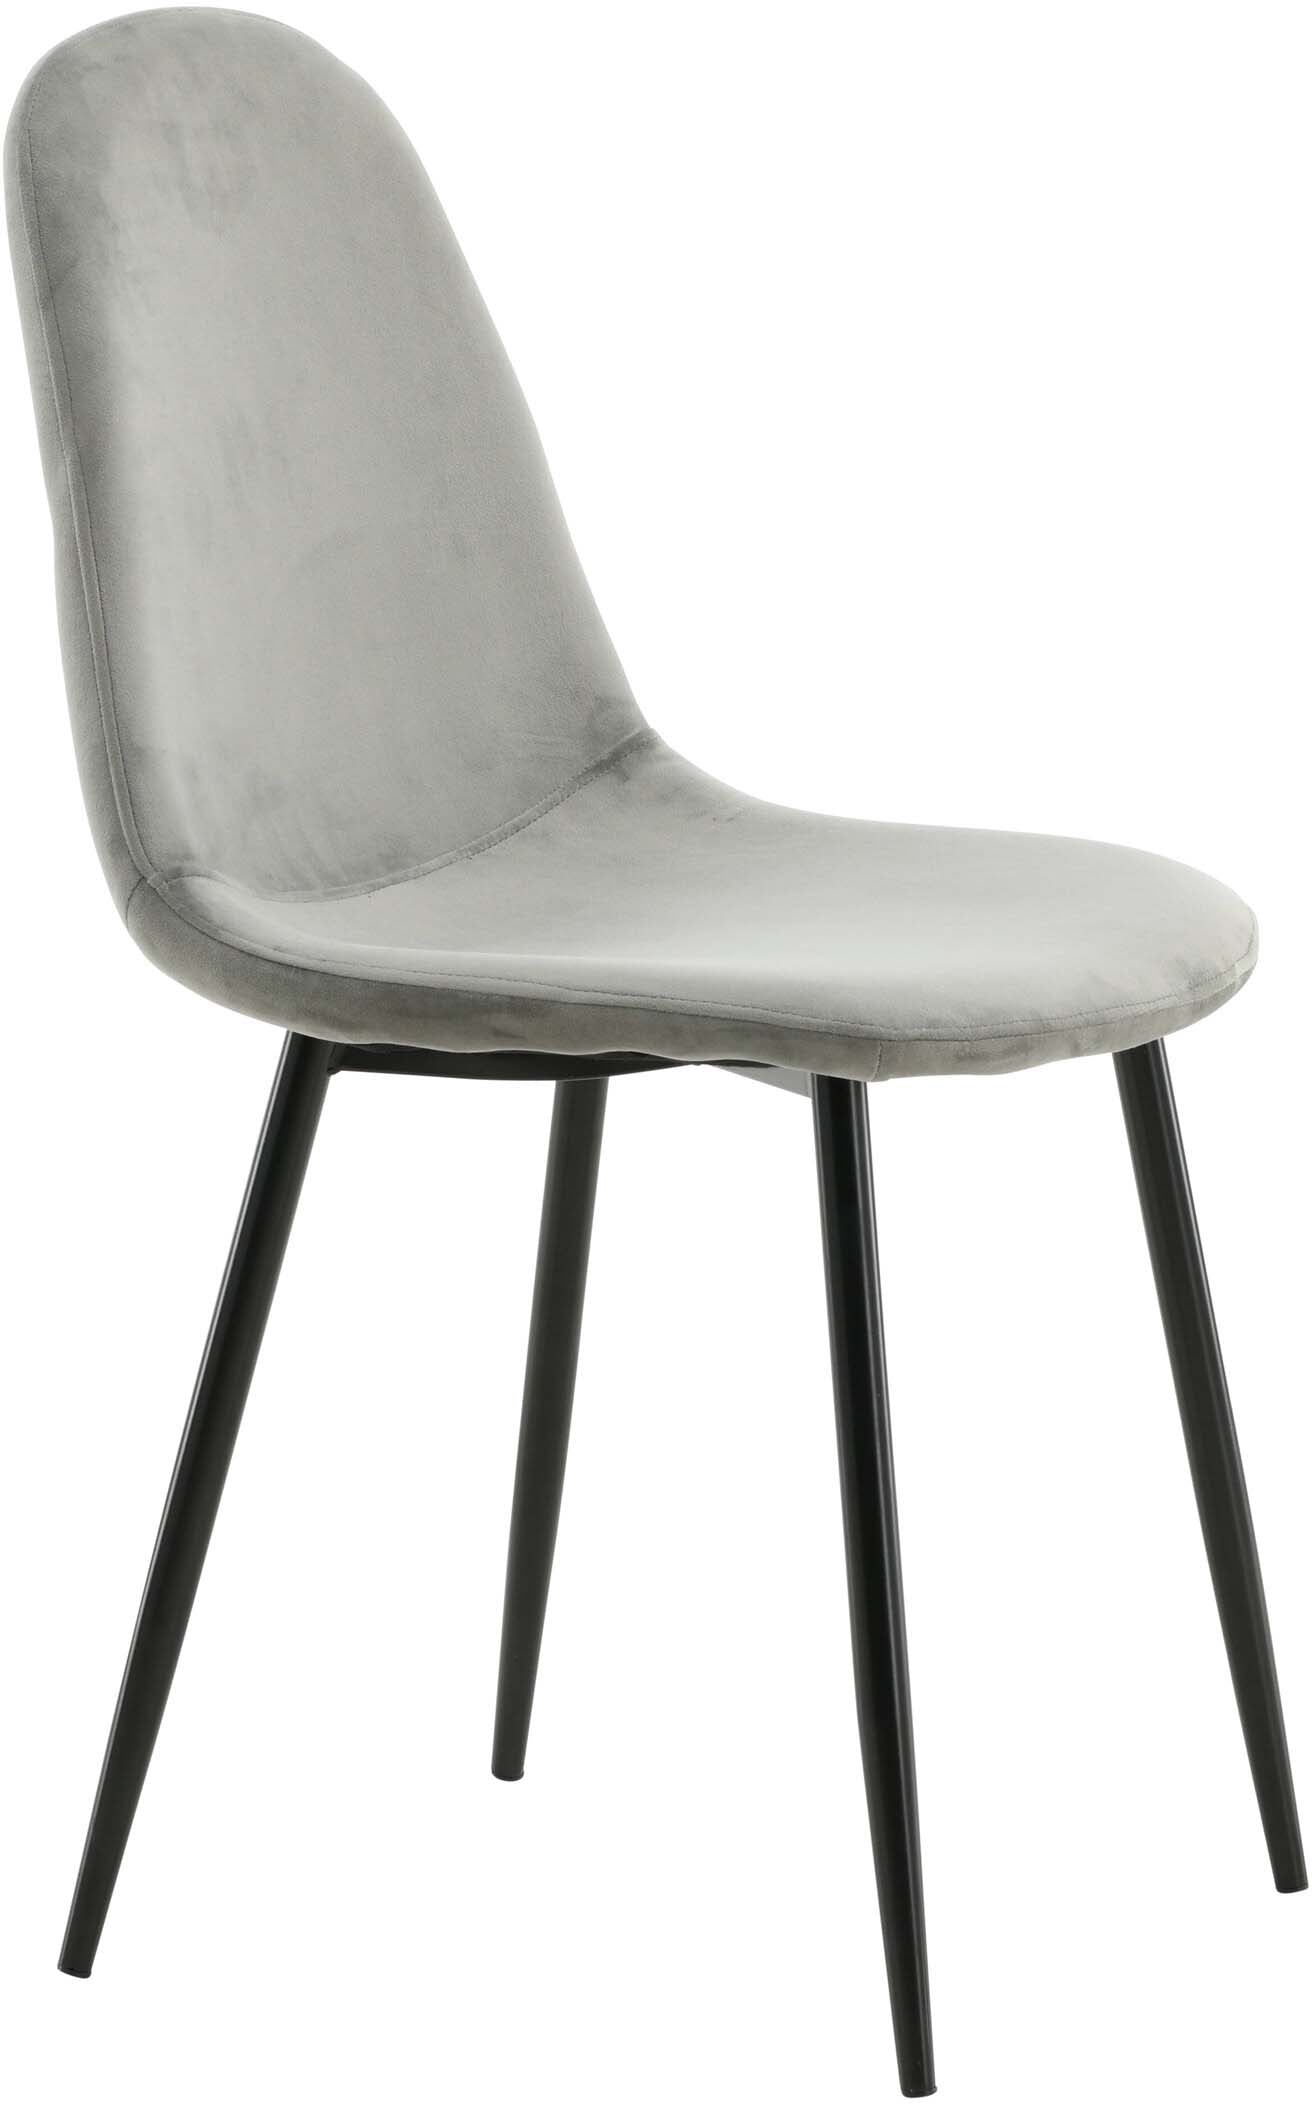 Polar Stuhl in Grau/Schwarz präsentiert im Onlineshop von KAQTU Design AG. Stuhl ist von Venture Home